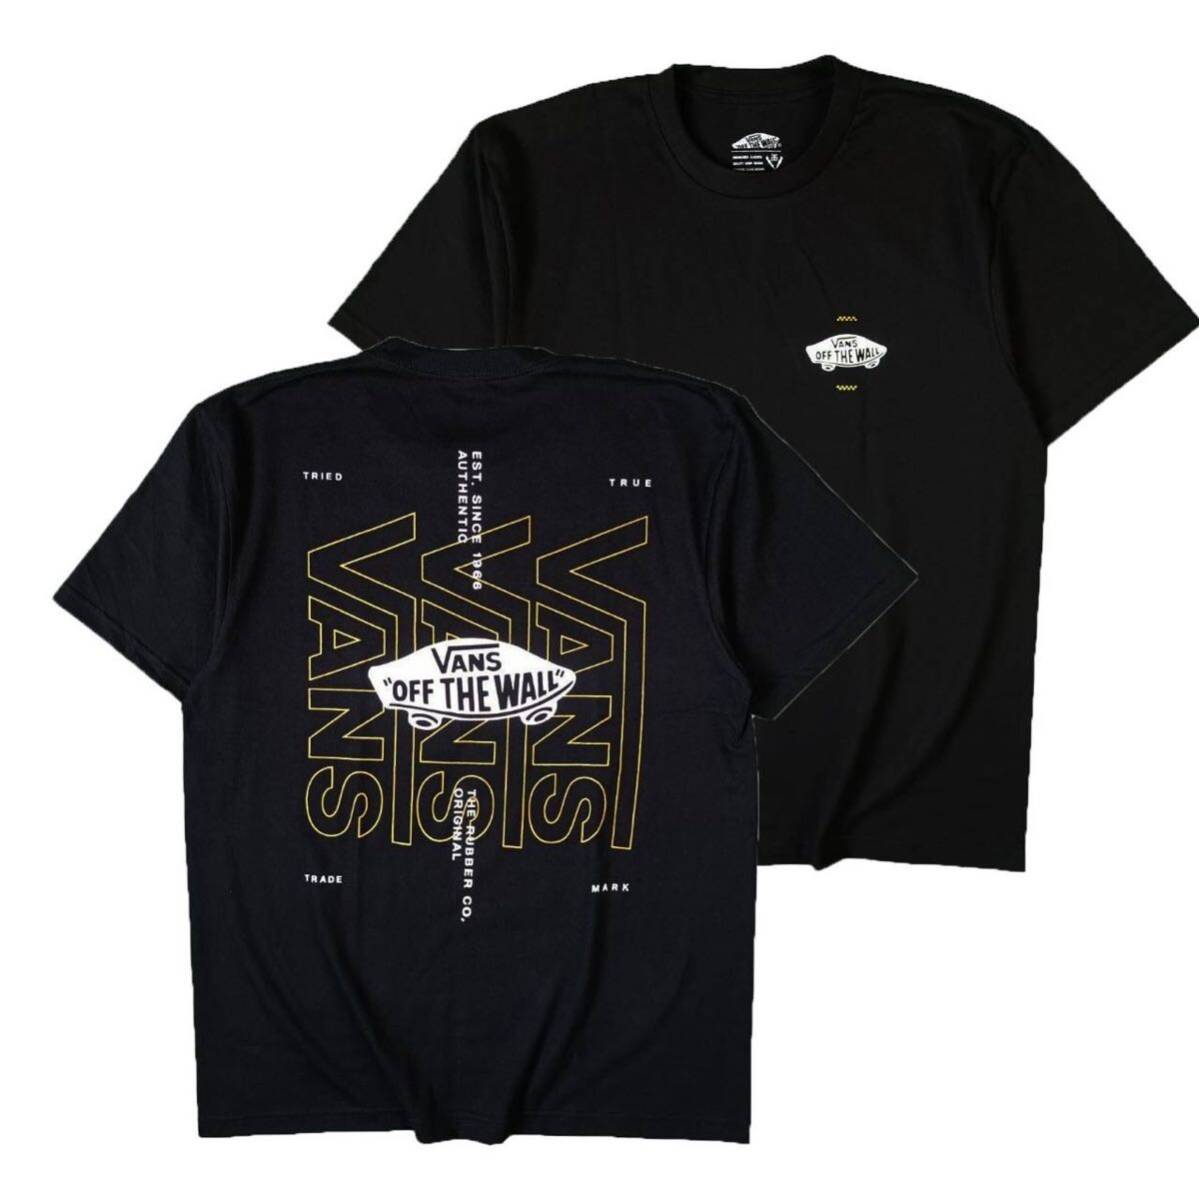 Tシャツ 半袖 バンズ VANS ストリート系 ロサンゼルス スケボー スケードボード カリフォルニア 黒 Lサイズ_画像1